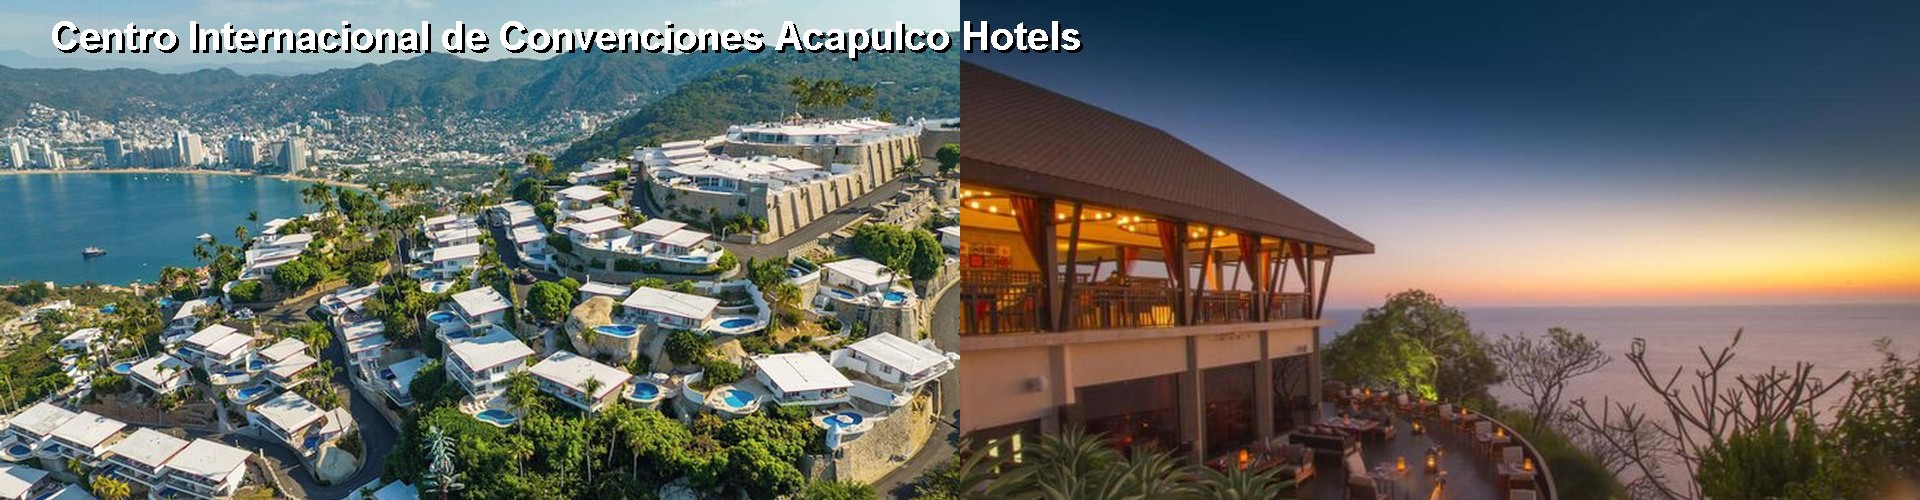 5 Best Hotels near Centro Internacional de Convenciones Acapulco